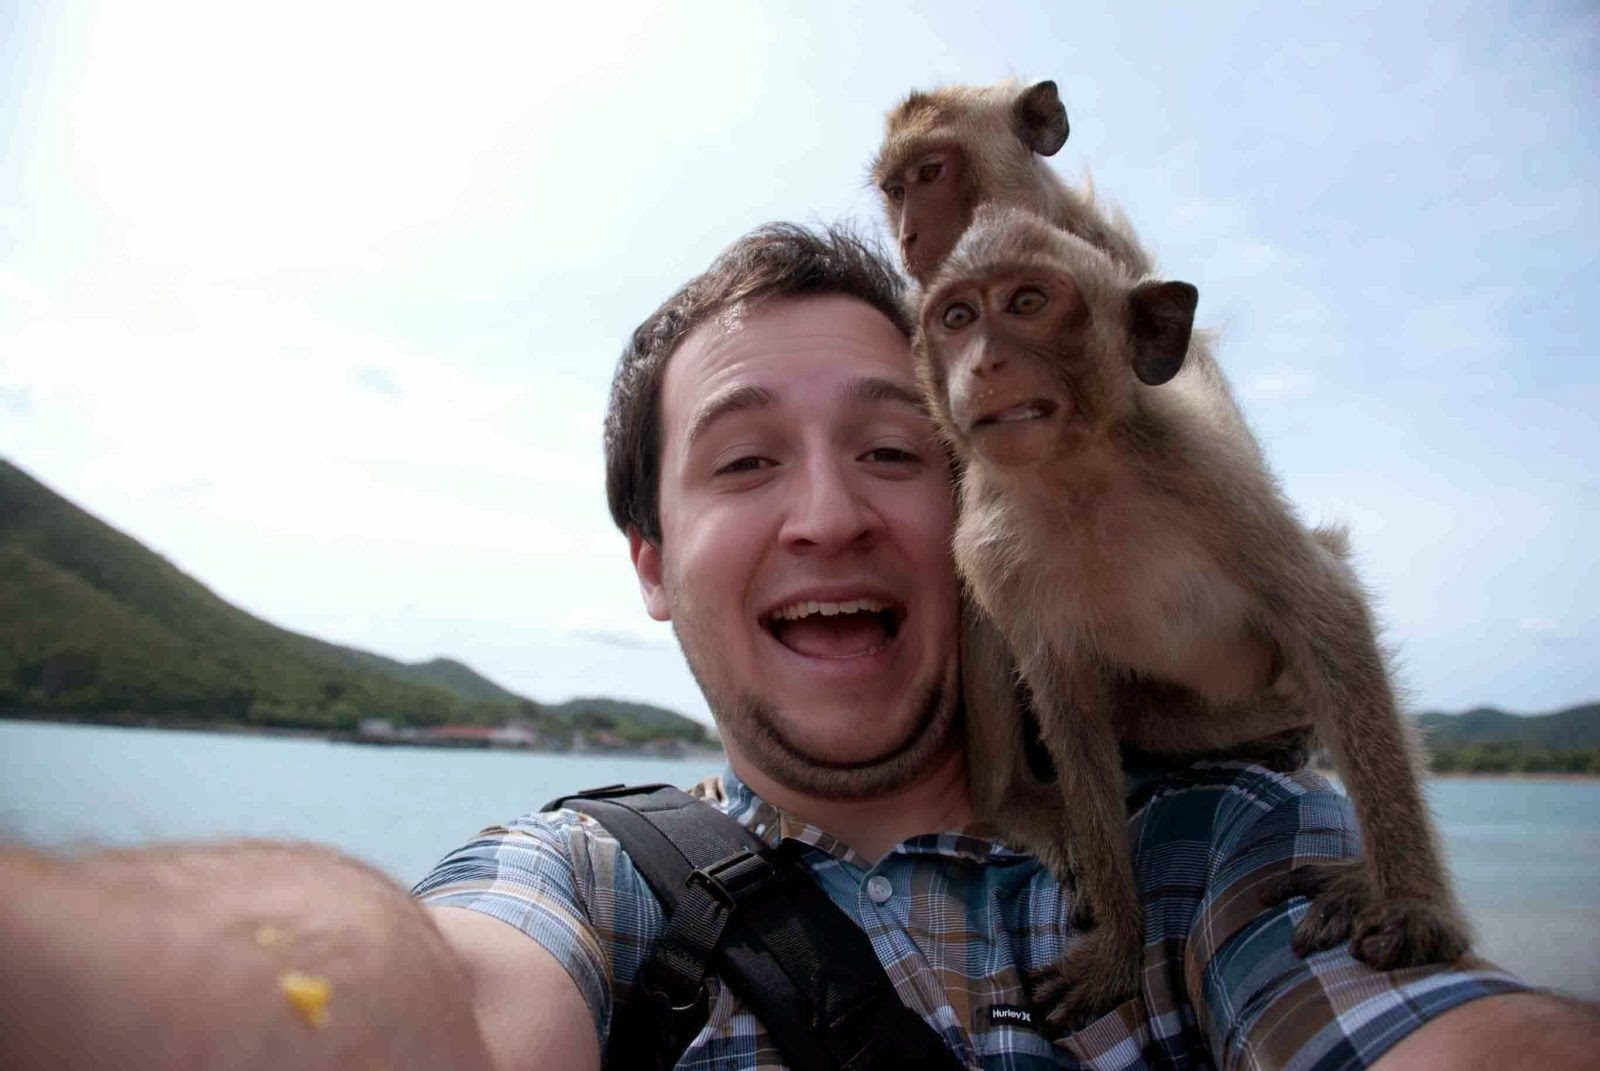  ! selfie_with_monkeys.